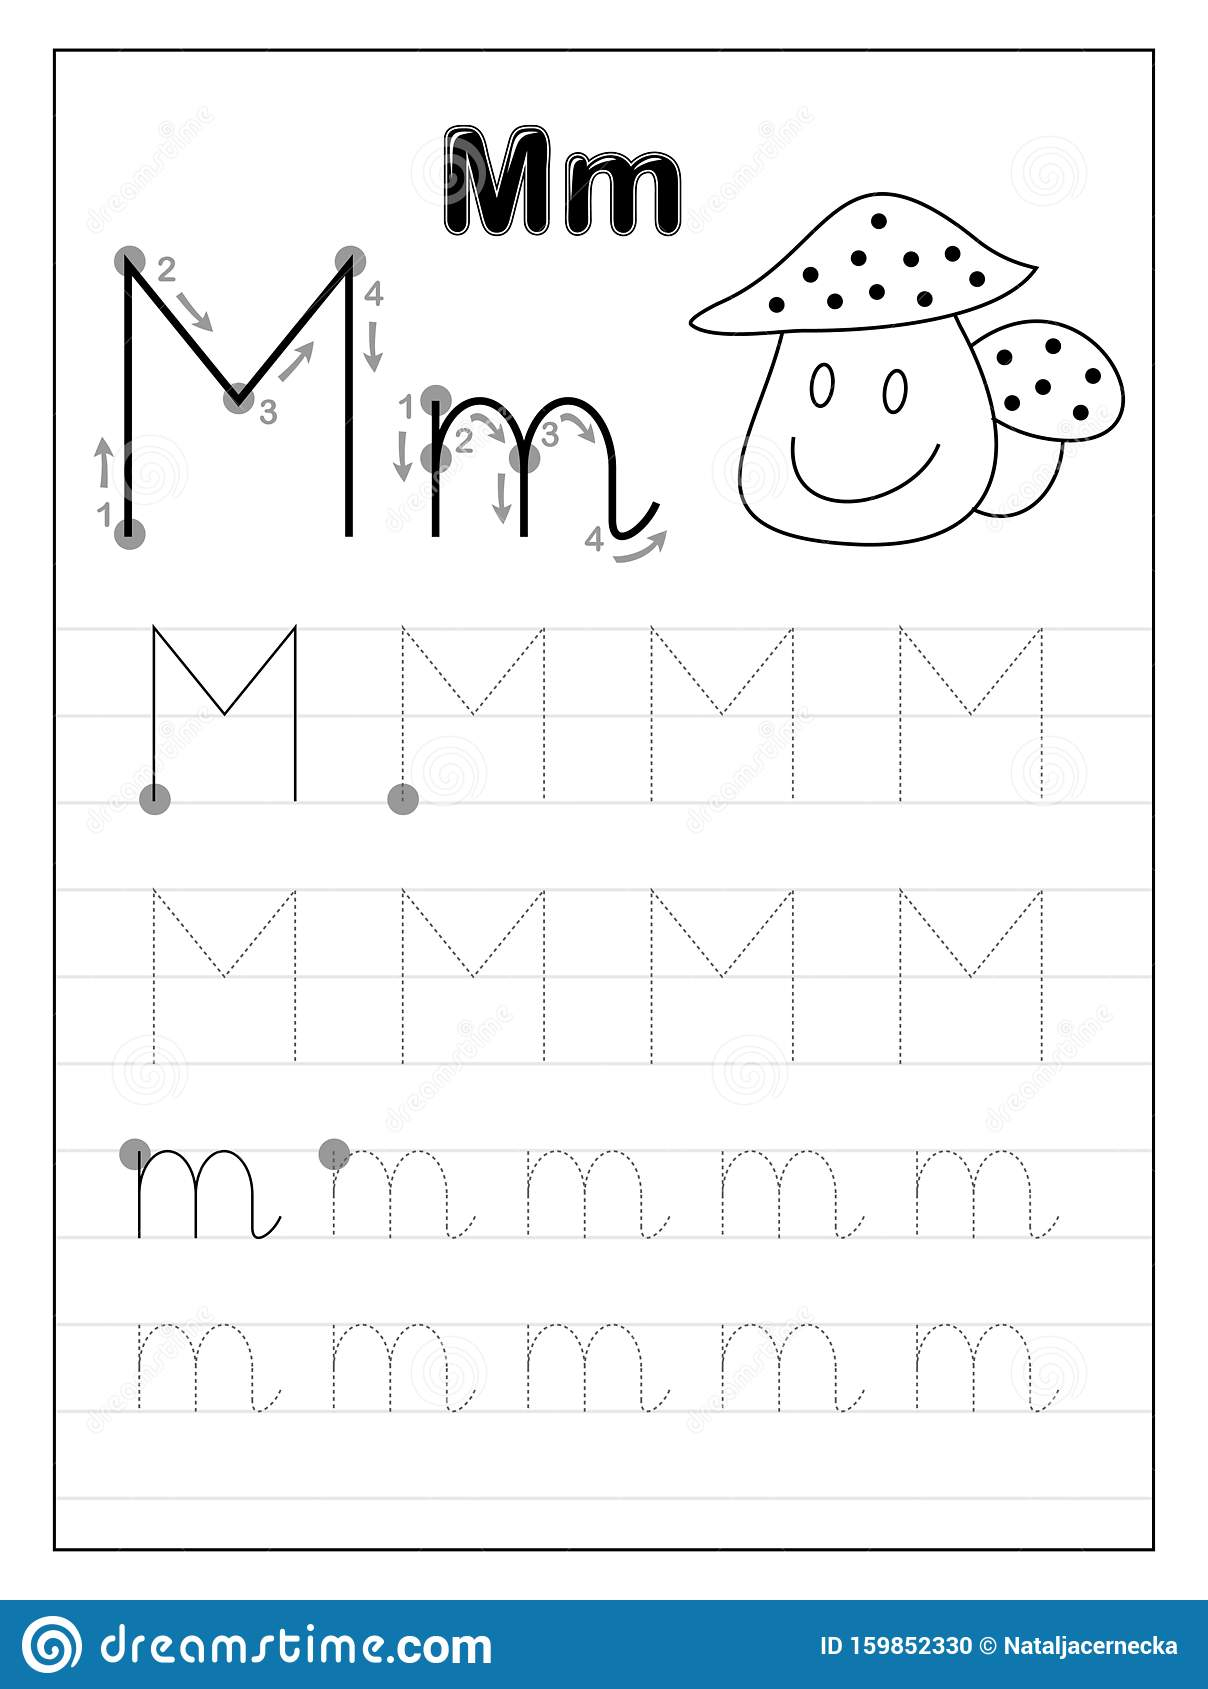 tracing-letter-m-worksheets-kindergarten-tracinglettersworksheetscom